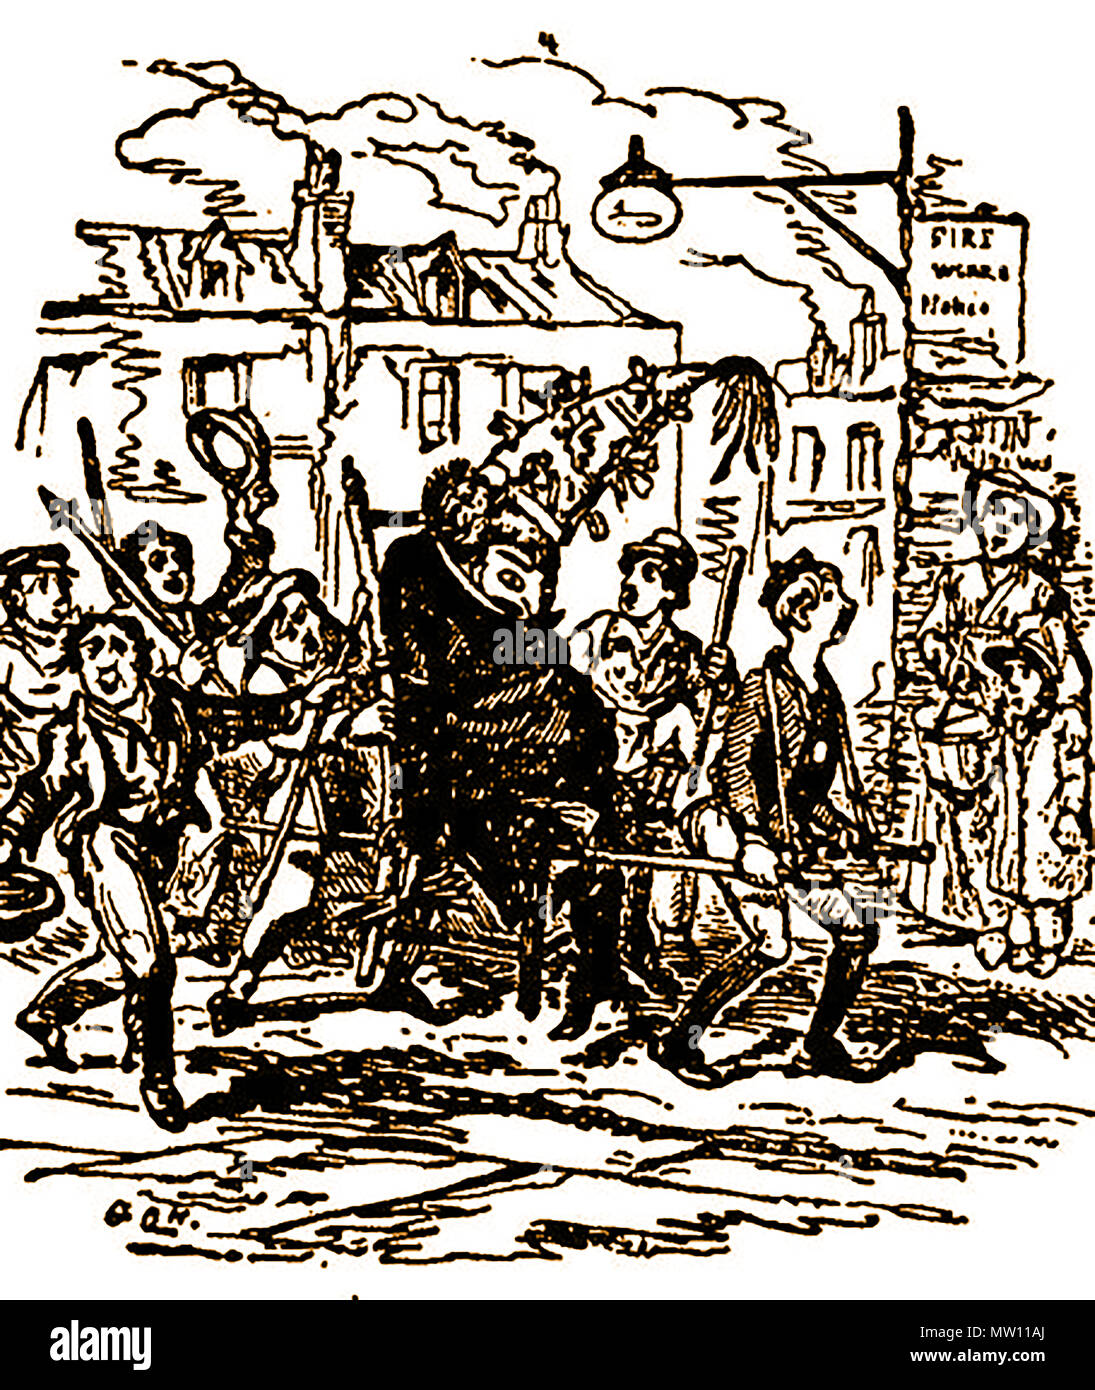 Ein 1820 Bild der englischen Kinder eine n Bildnis von Guy Fawkes durch die Straßen am Lagerfeuer Nacht am Jahrestag der Gunpowder Plot zu sprengen Parlament (5. November) vor ihm Brennen auf ein Lagerfeuer Stockfoto